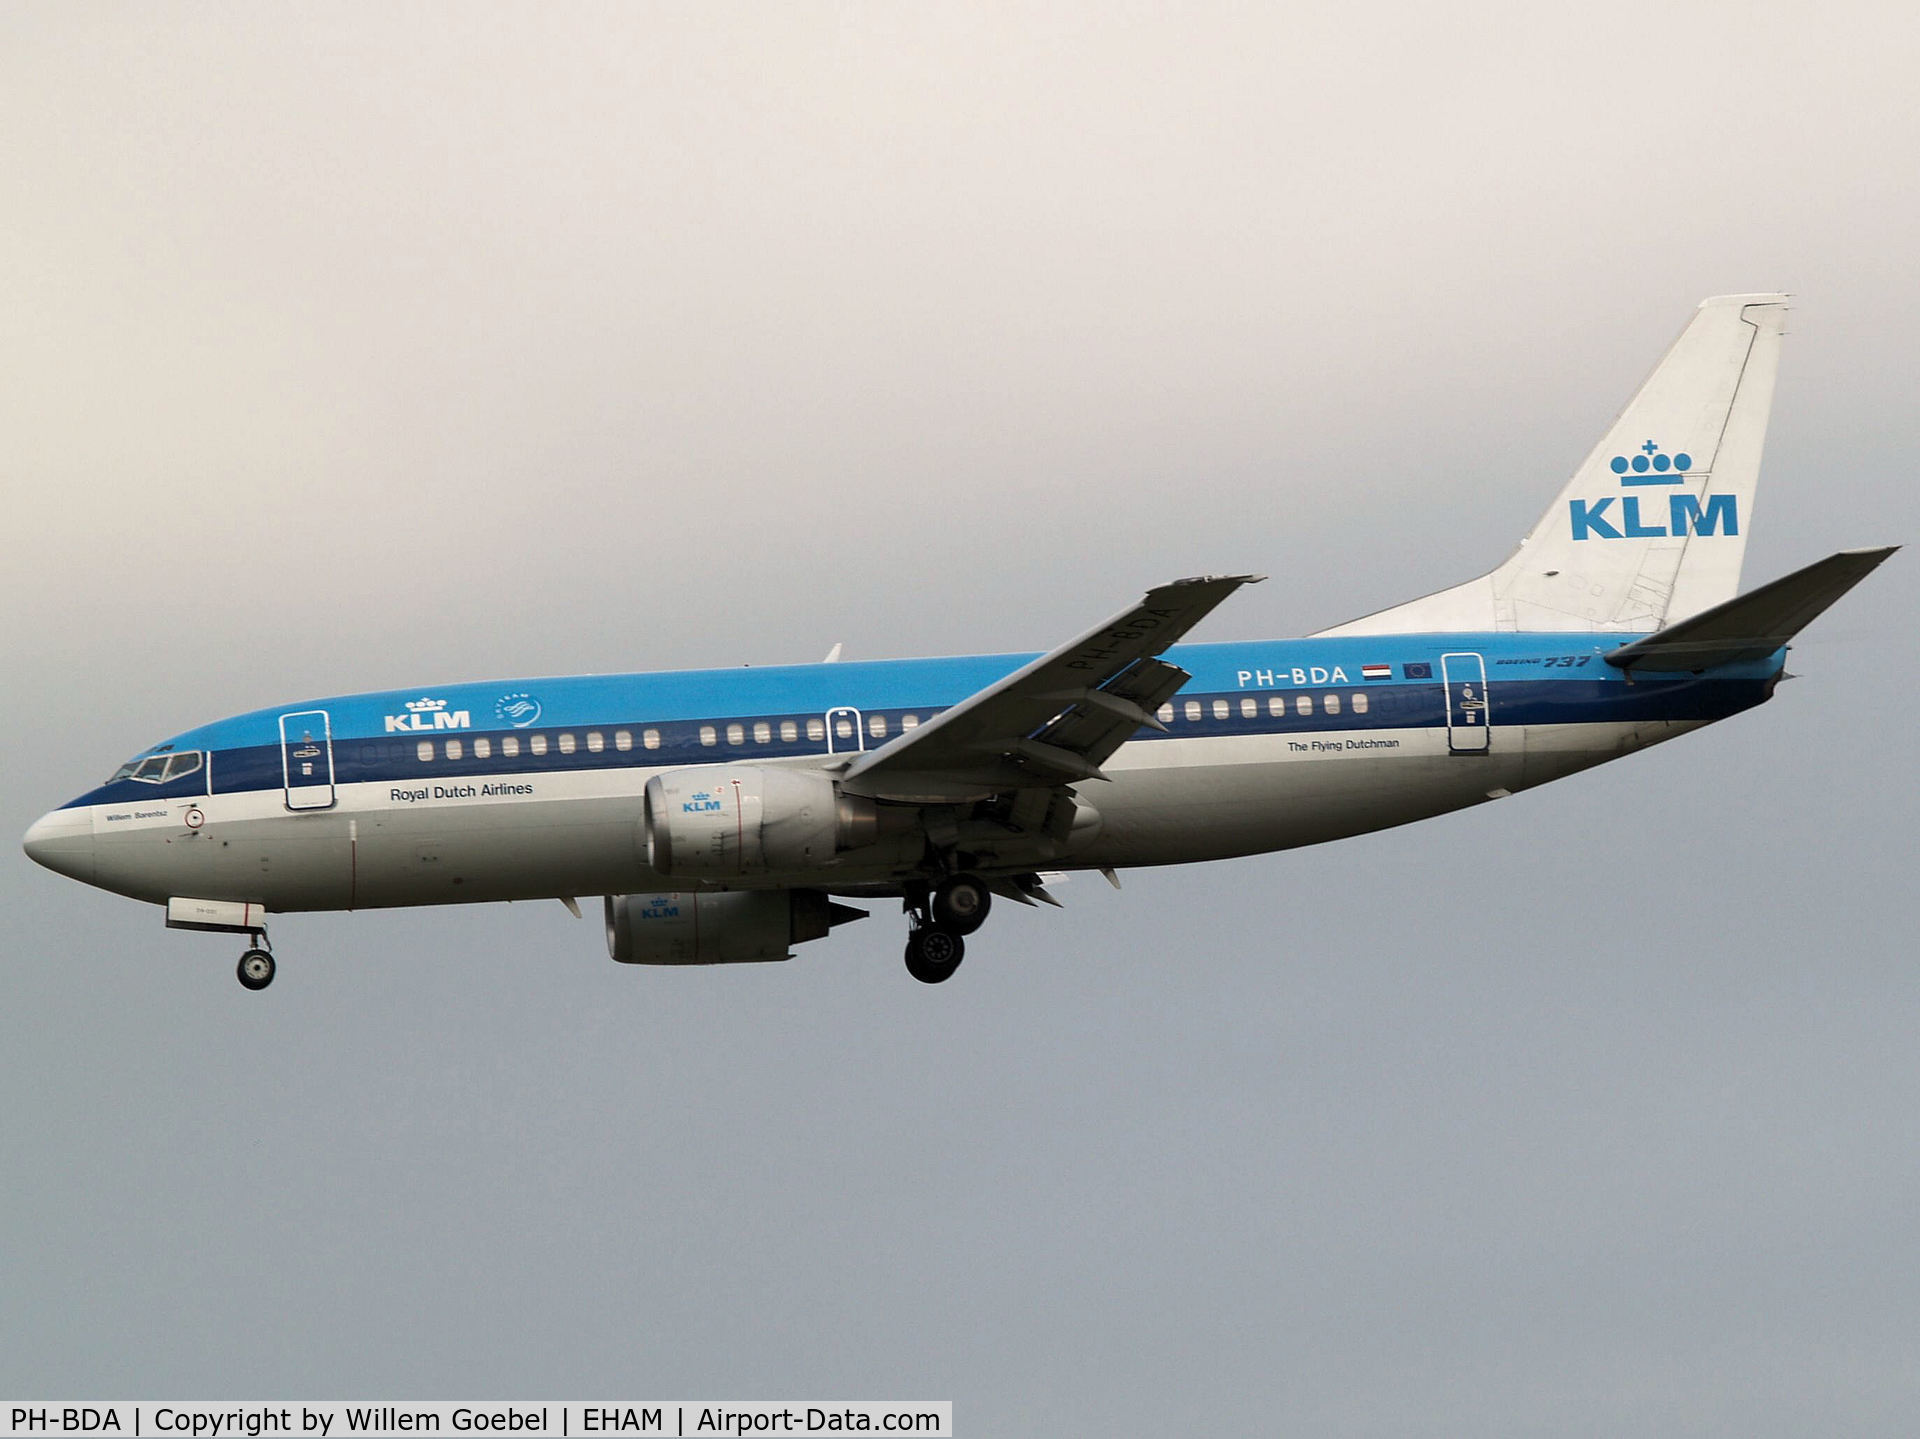 PH-BDA, 1986 Boeing 737-306 C/N 23537, Landing on runway C18 of Amsterdam Airport.